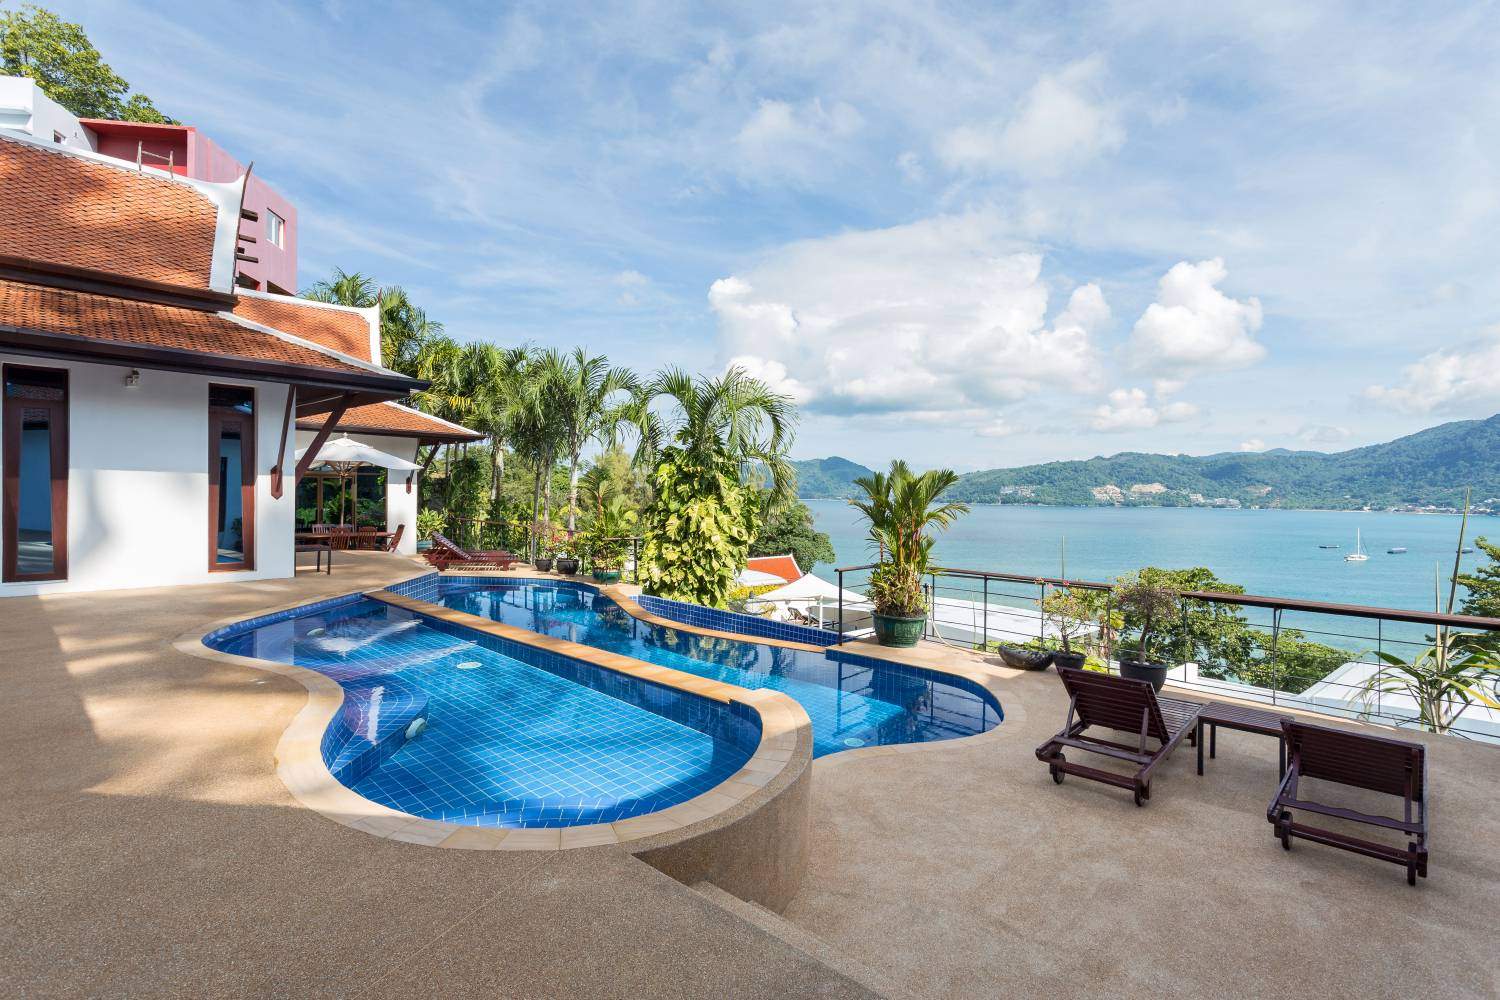 Rent villa Pra Nang, Thailand, Phuket, Patong | Villacarte